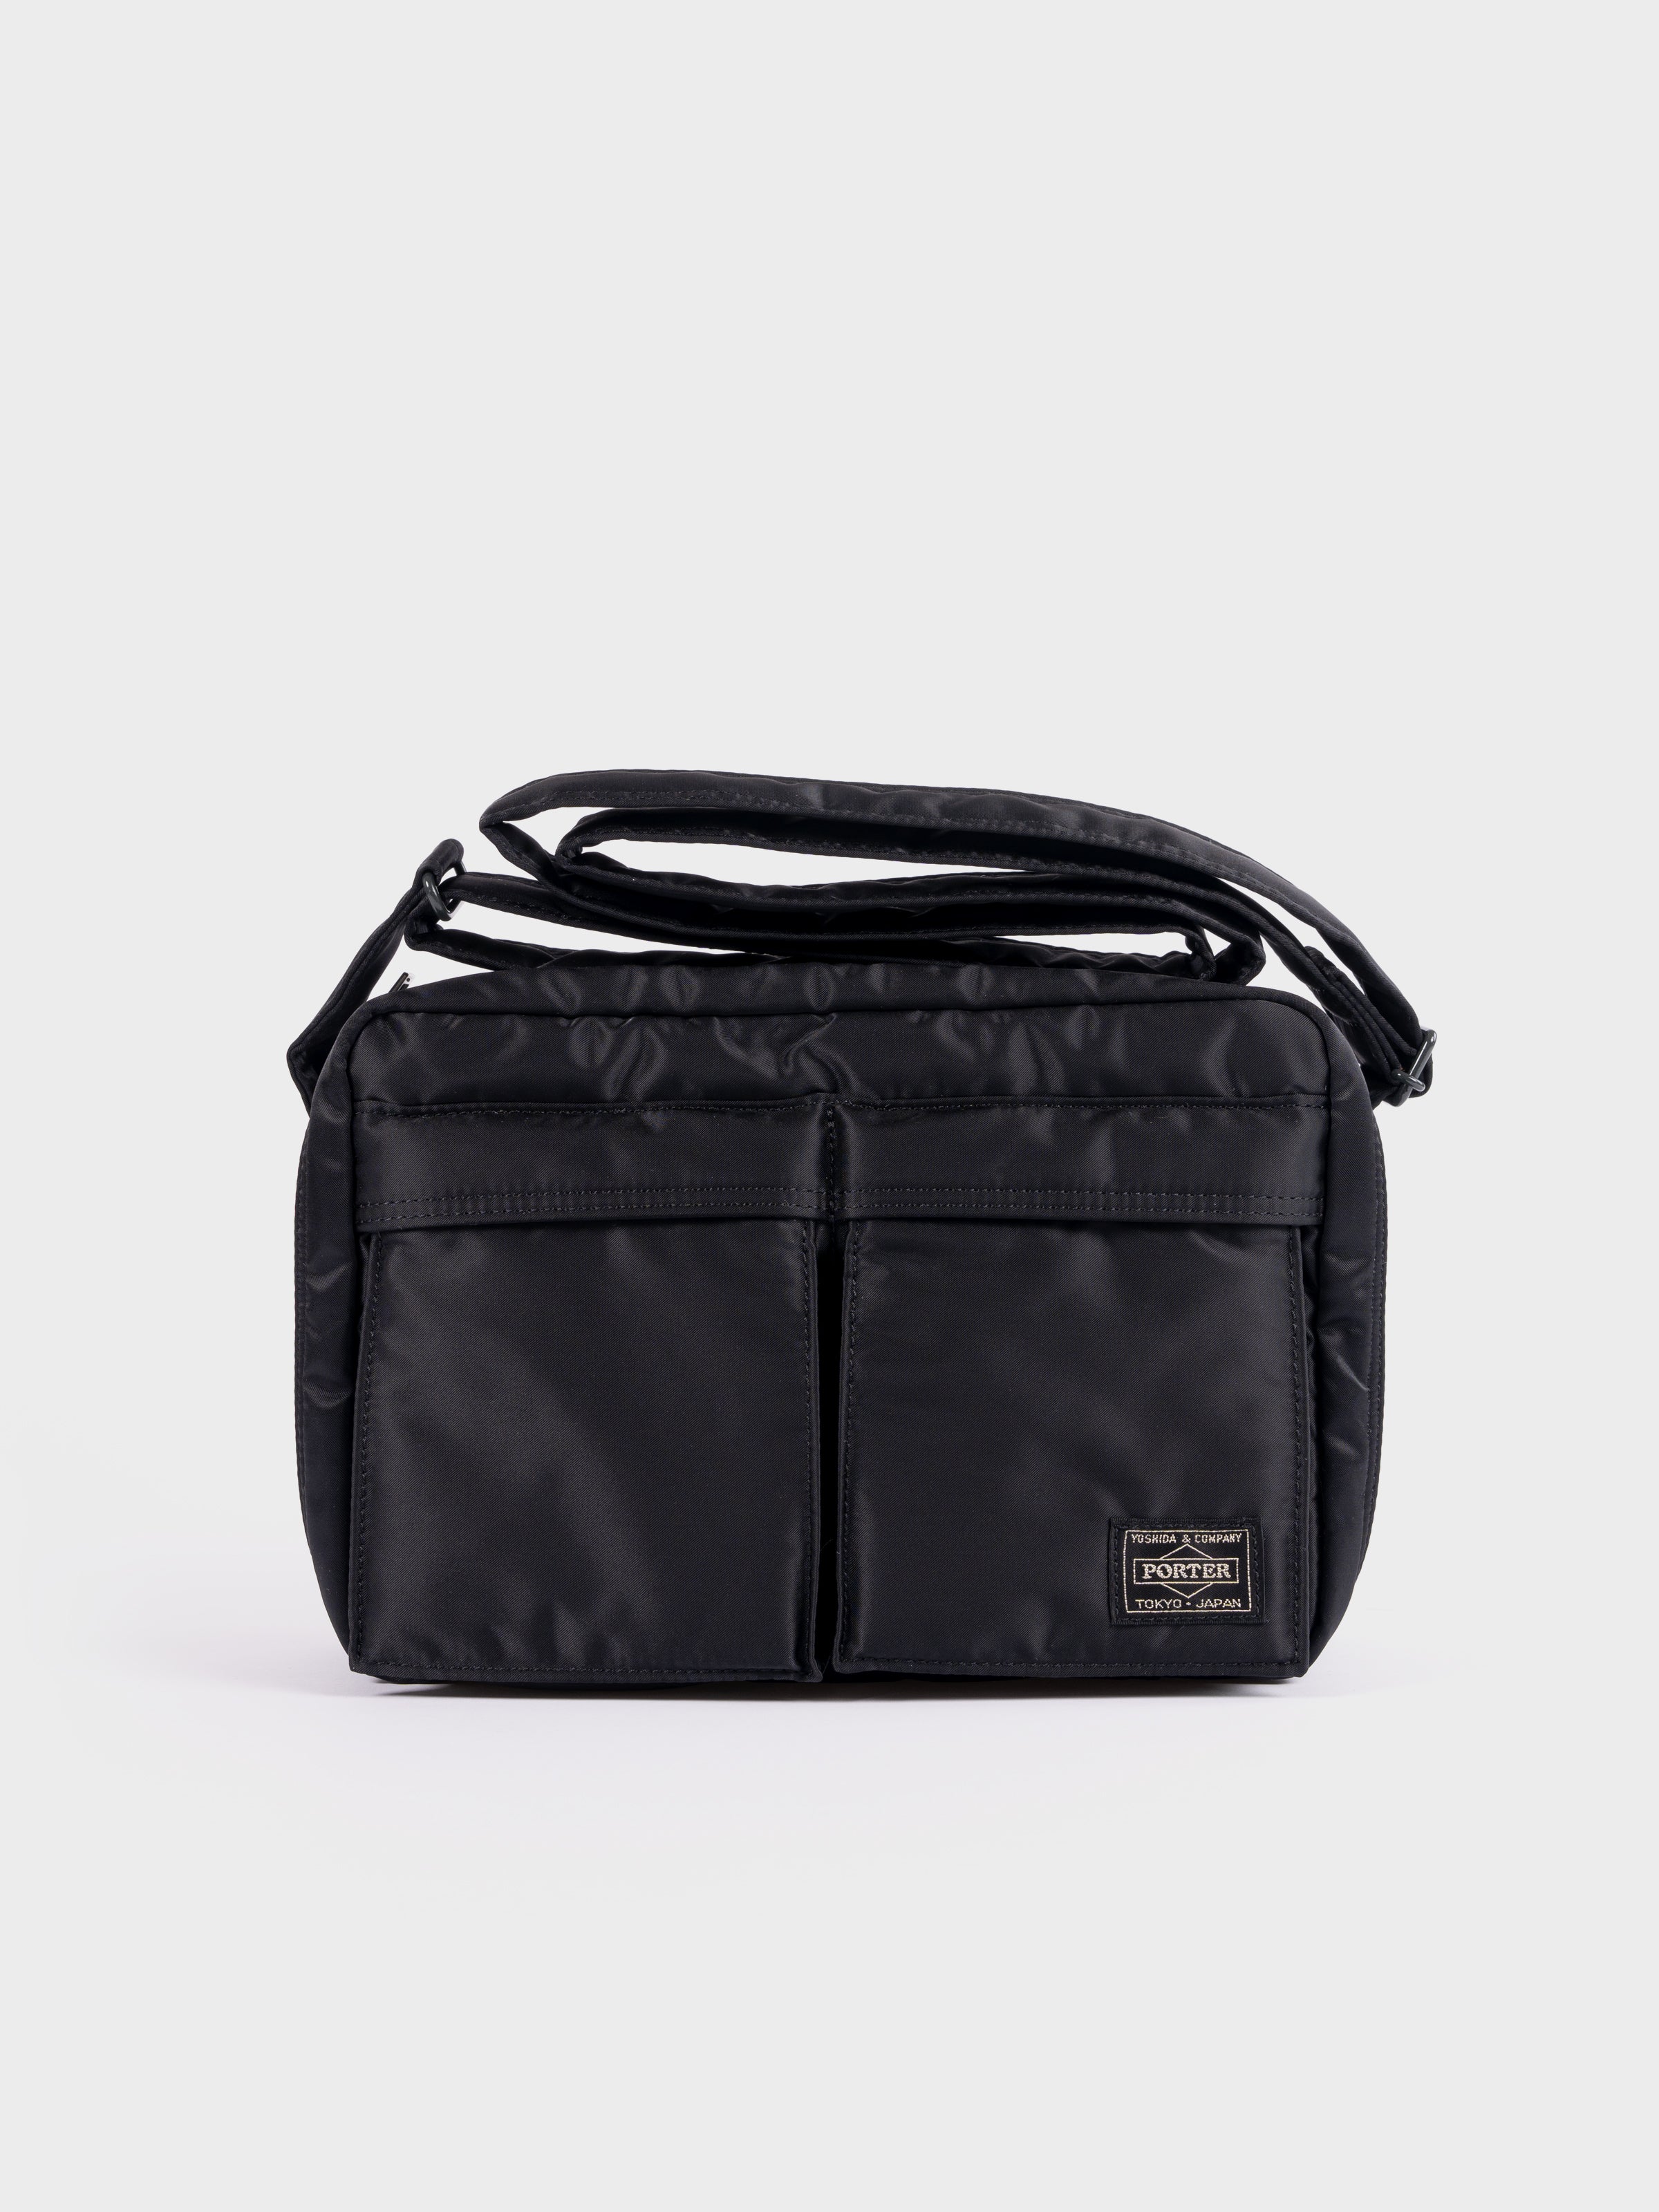 Porter-Yoshida & Co Tanker Shoulder Bag S - Black – SevenStones